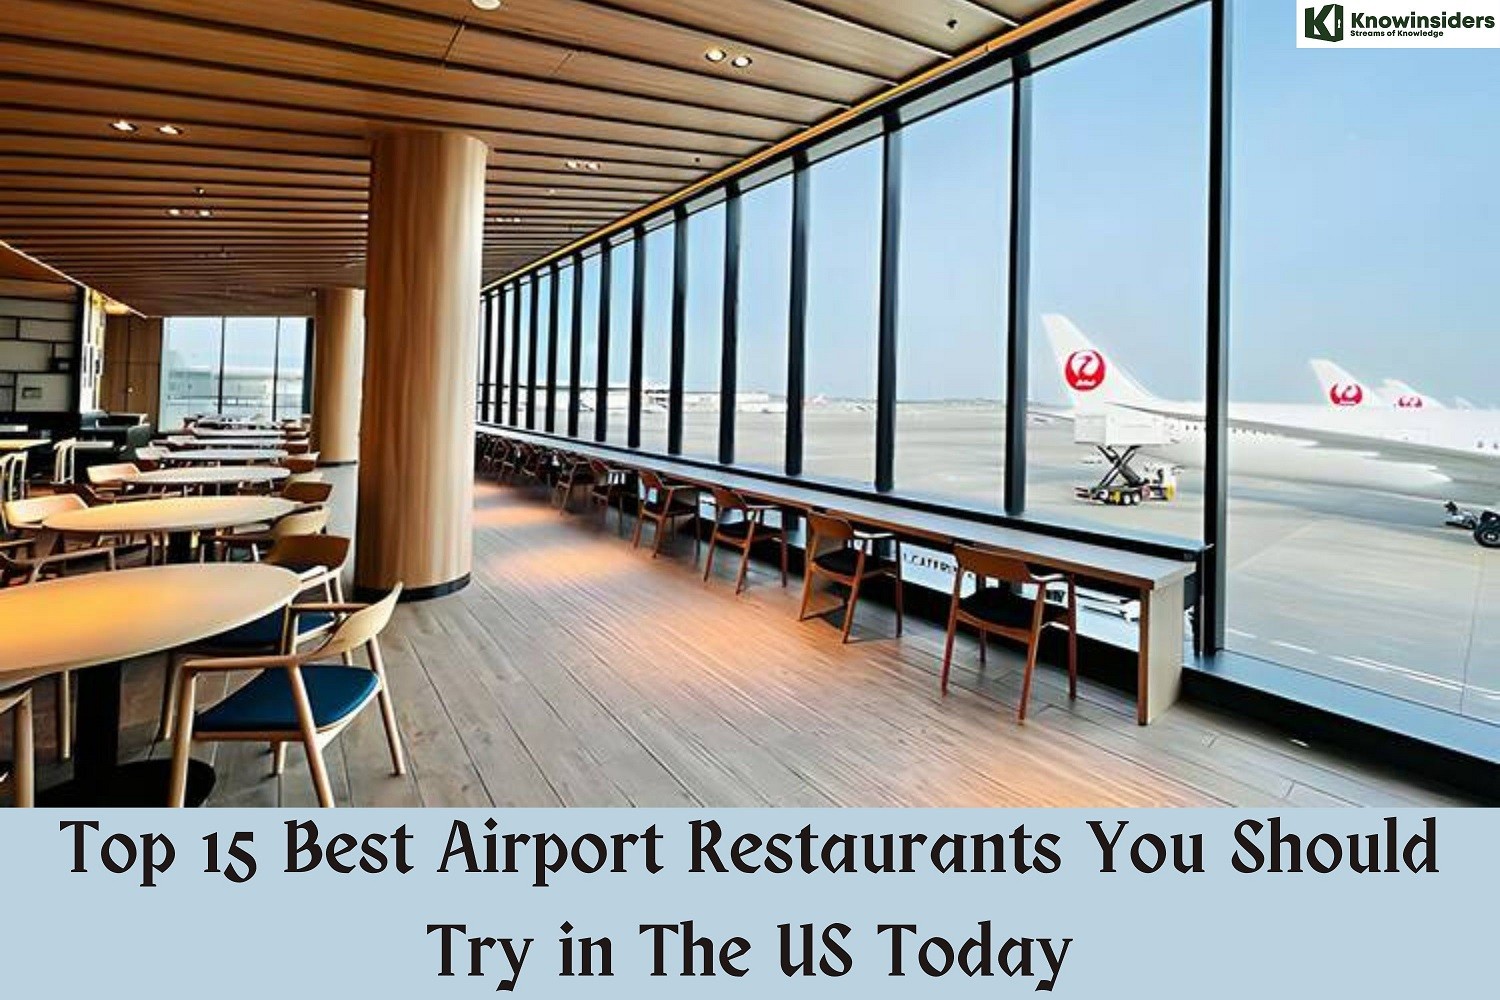 Top 15 Best Airport Restaurants in the US Today